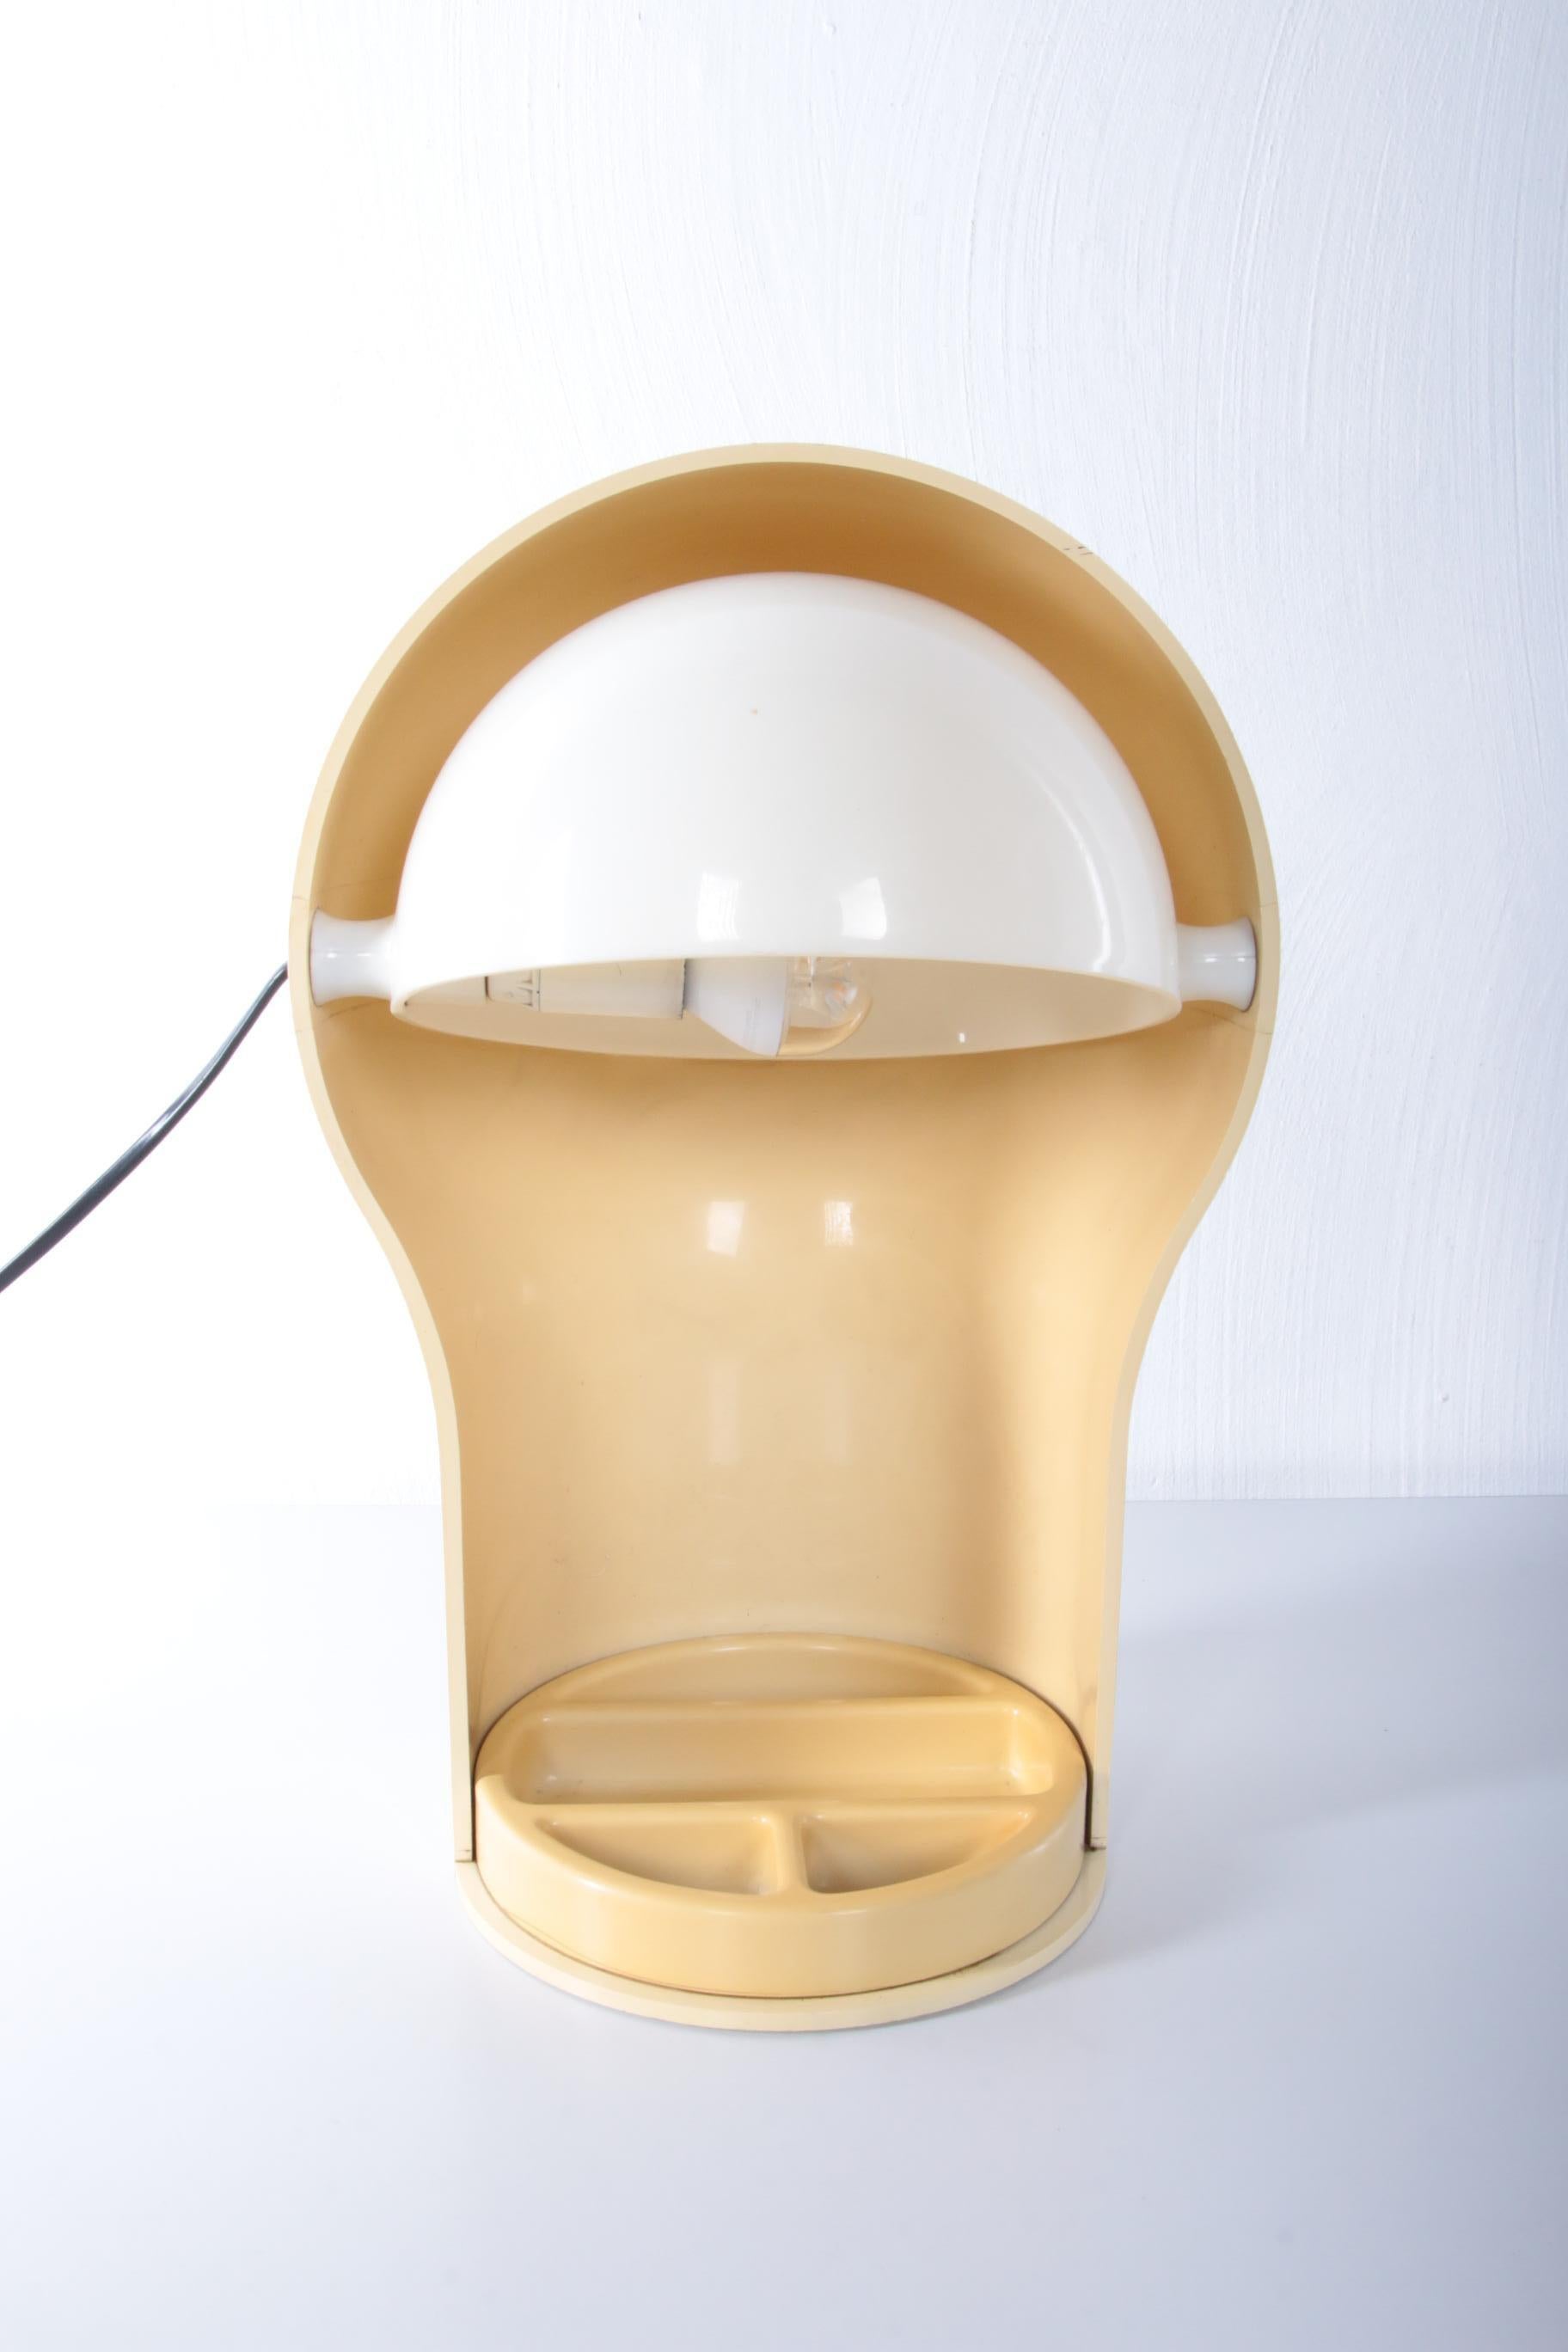 Mid-20th Century Vico Magistretti Desk Lamp Model Telegono Made by Artemide, 1960s Italy